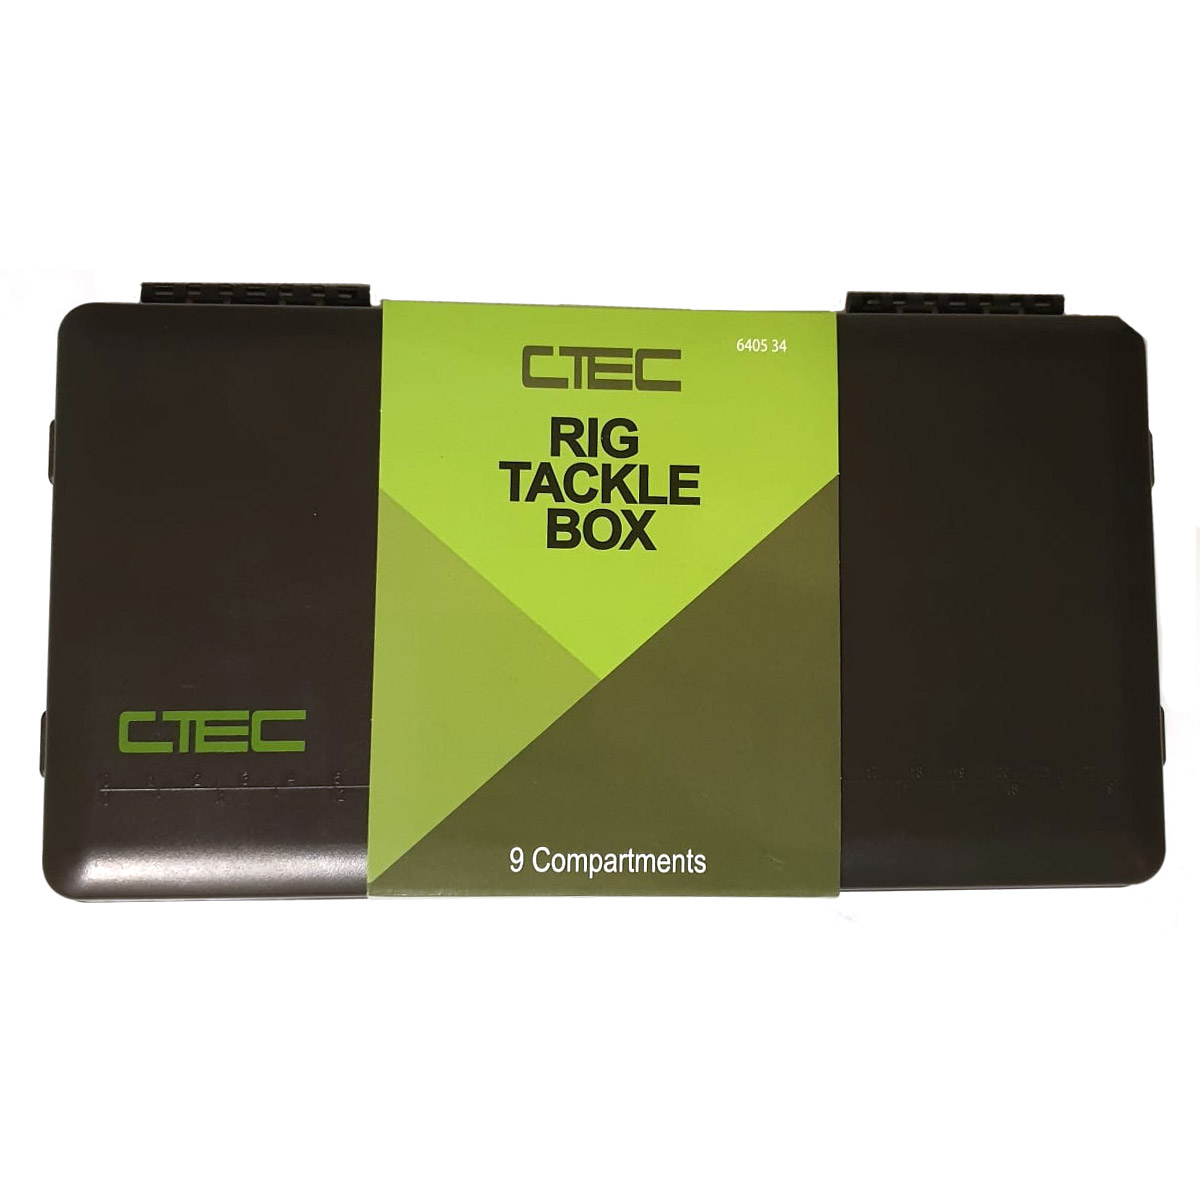 Spro C-Tec Rig Tackle Box